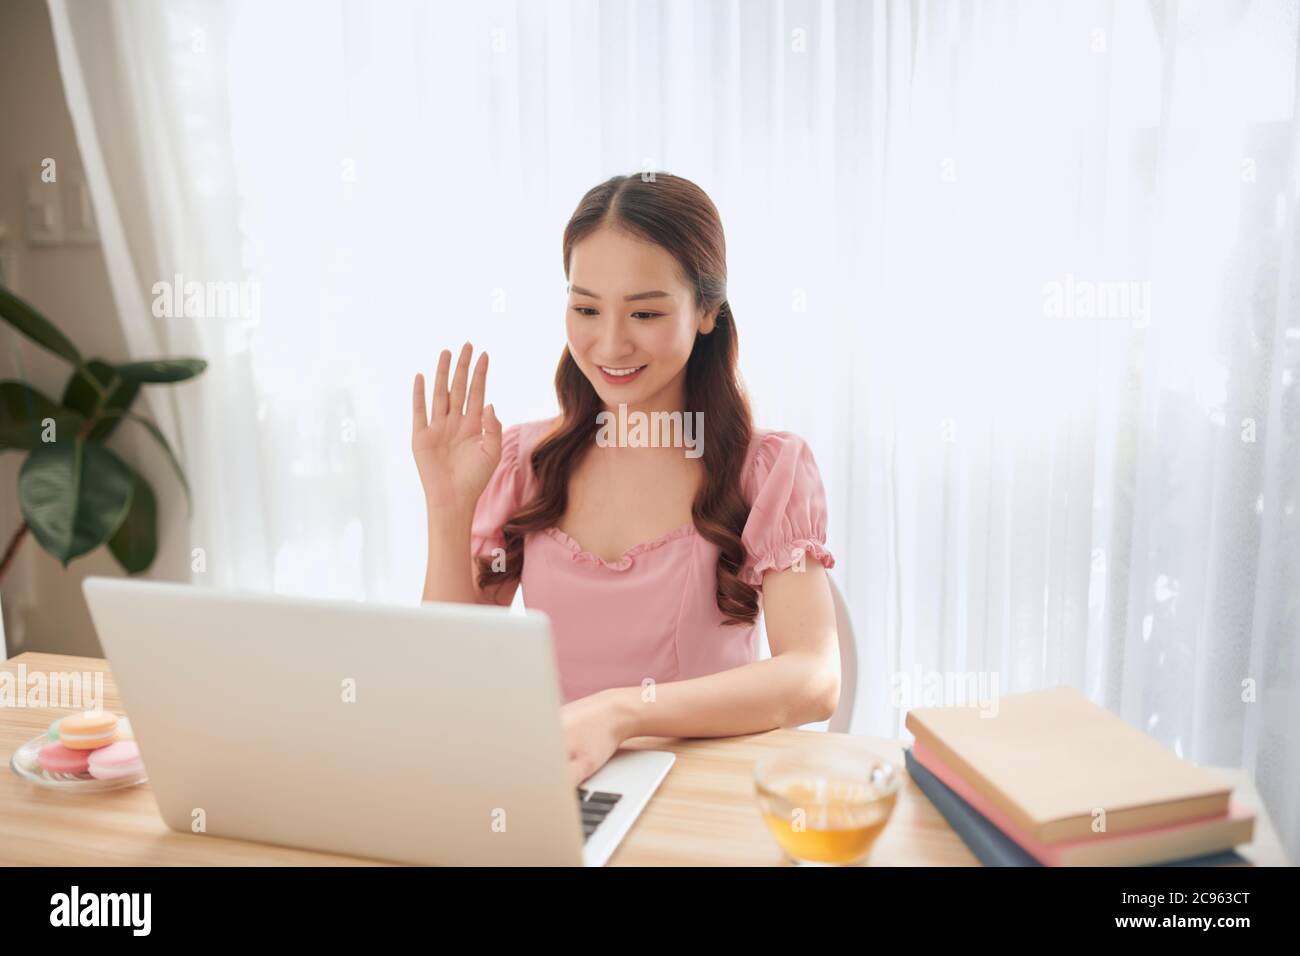 Jeune femme concentrée appréciant le travail sur ordinateur portable. Banque D'Images